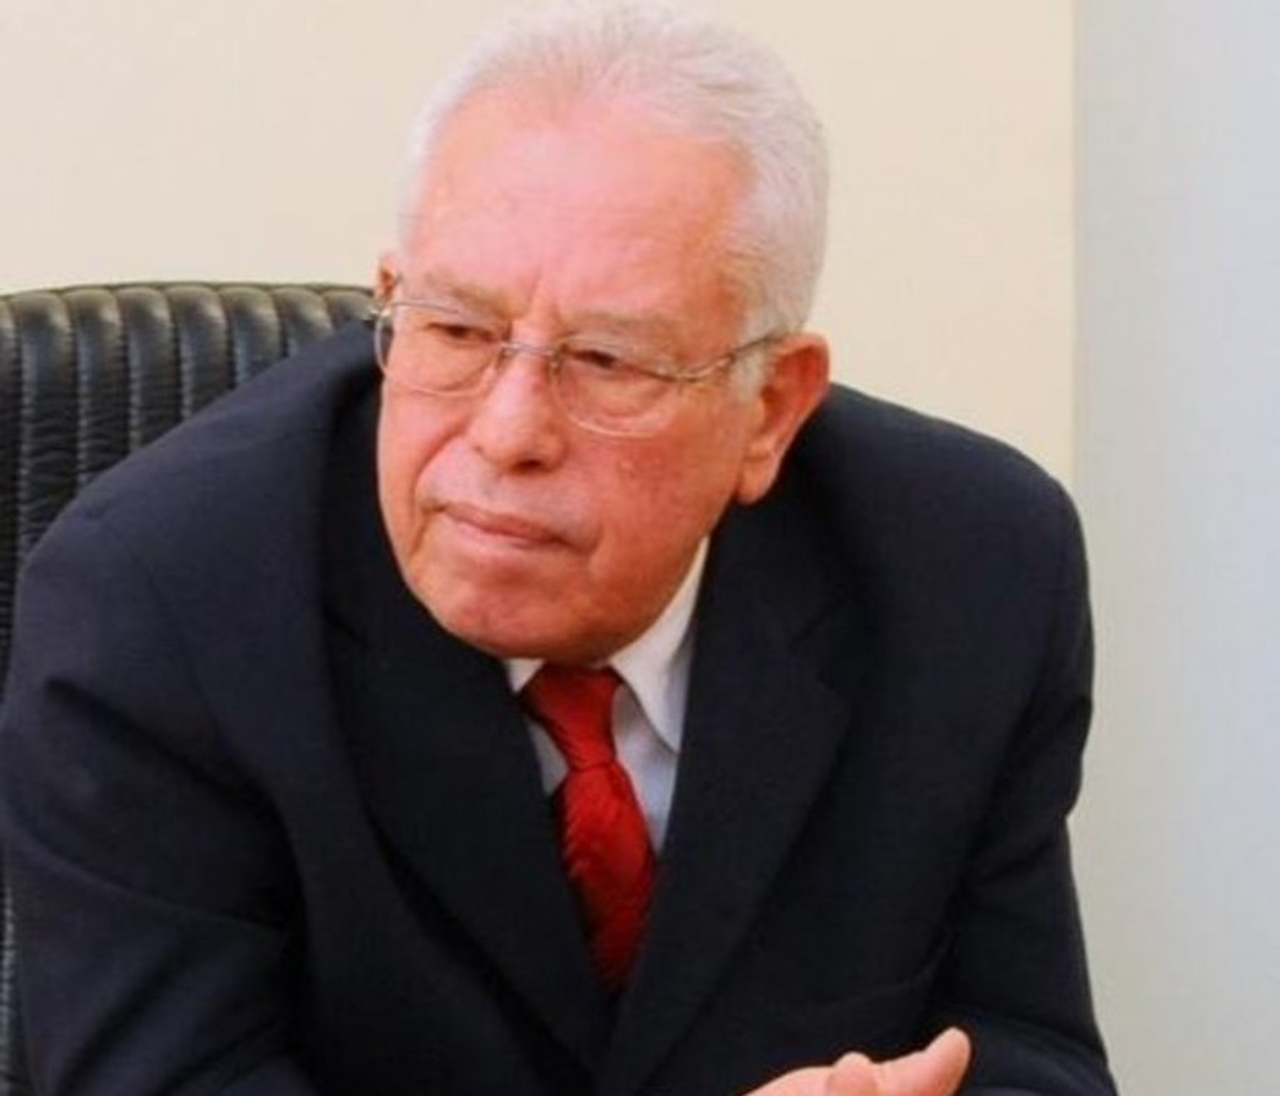 Conselheiro aposentado do TCE/TO, Herbert Carvalho morre aos 76 anos em Palmas; Governador lamenta e emite nota de pesar